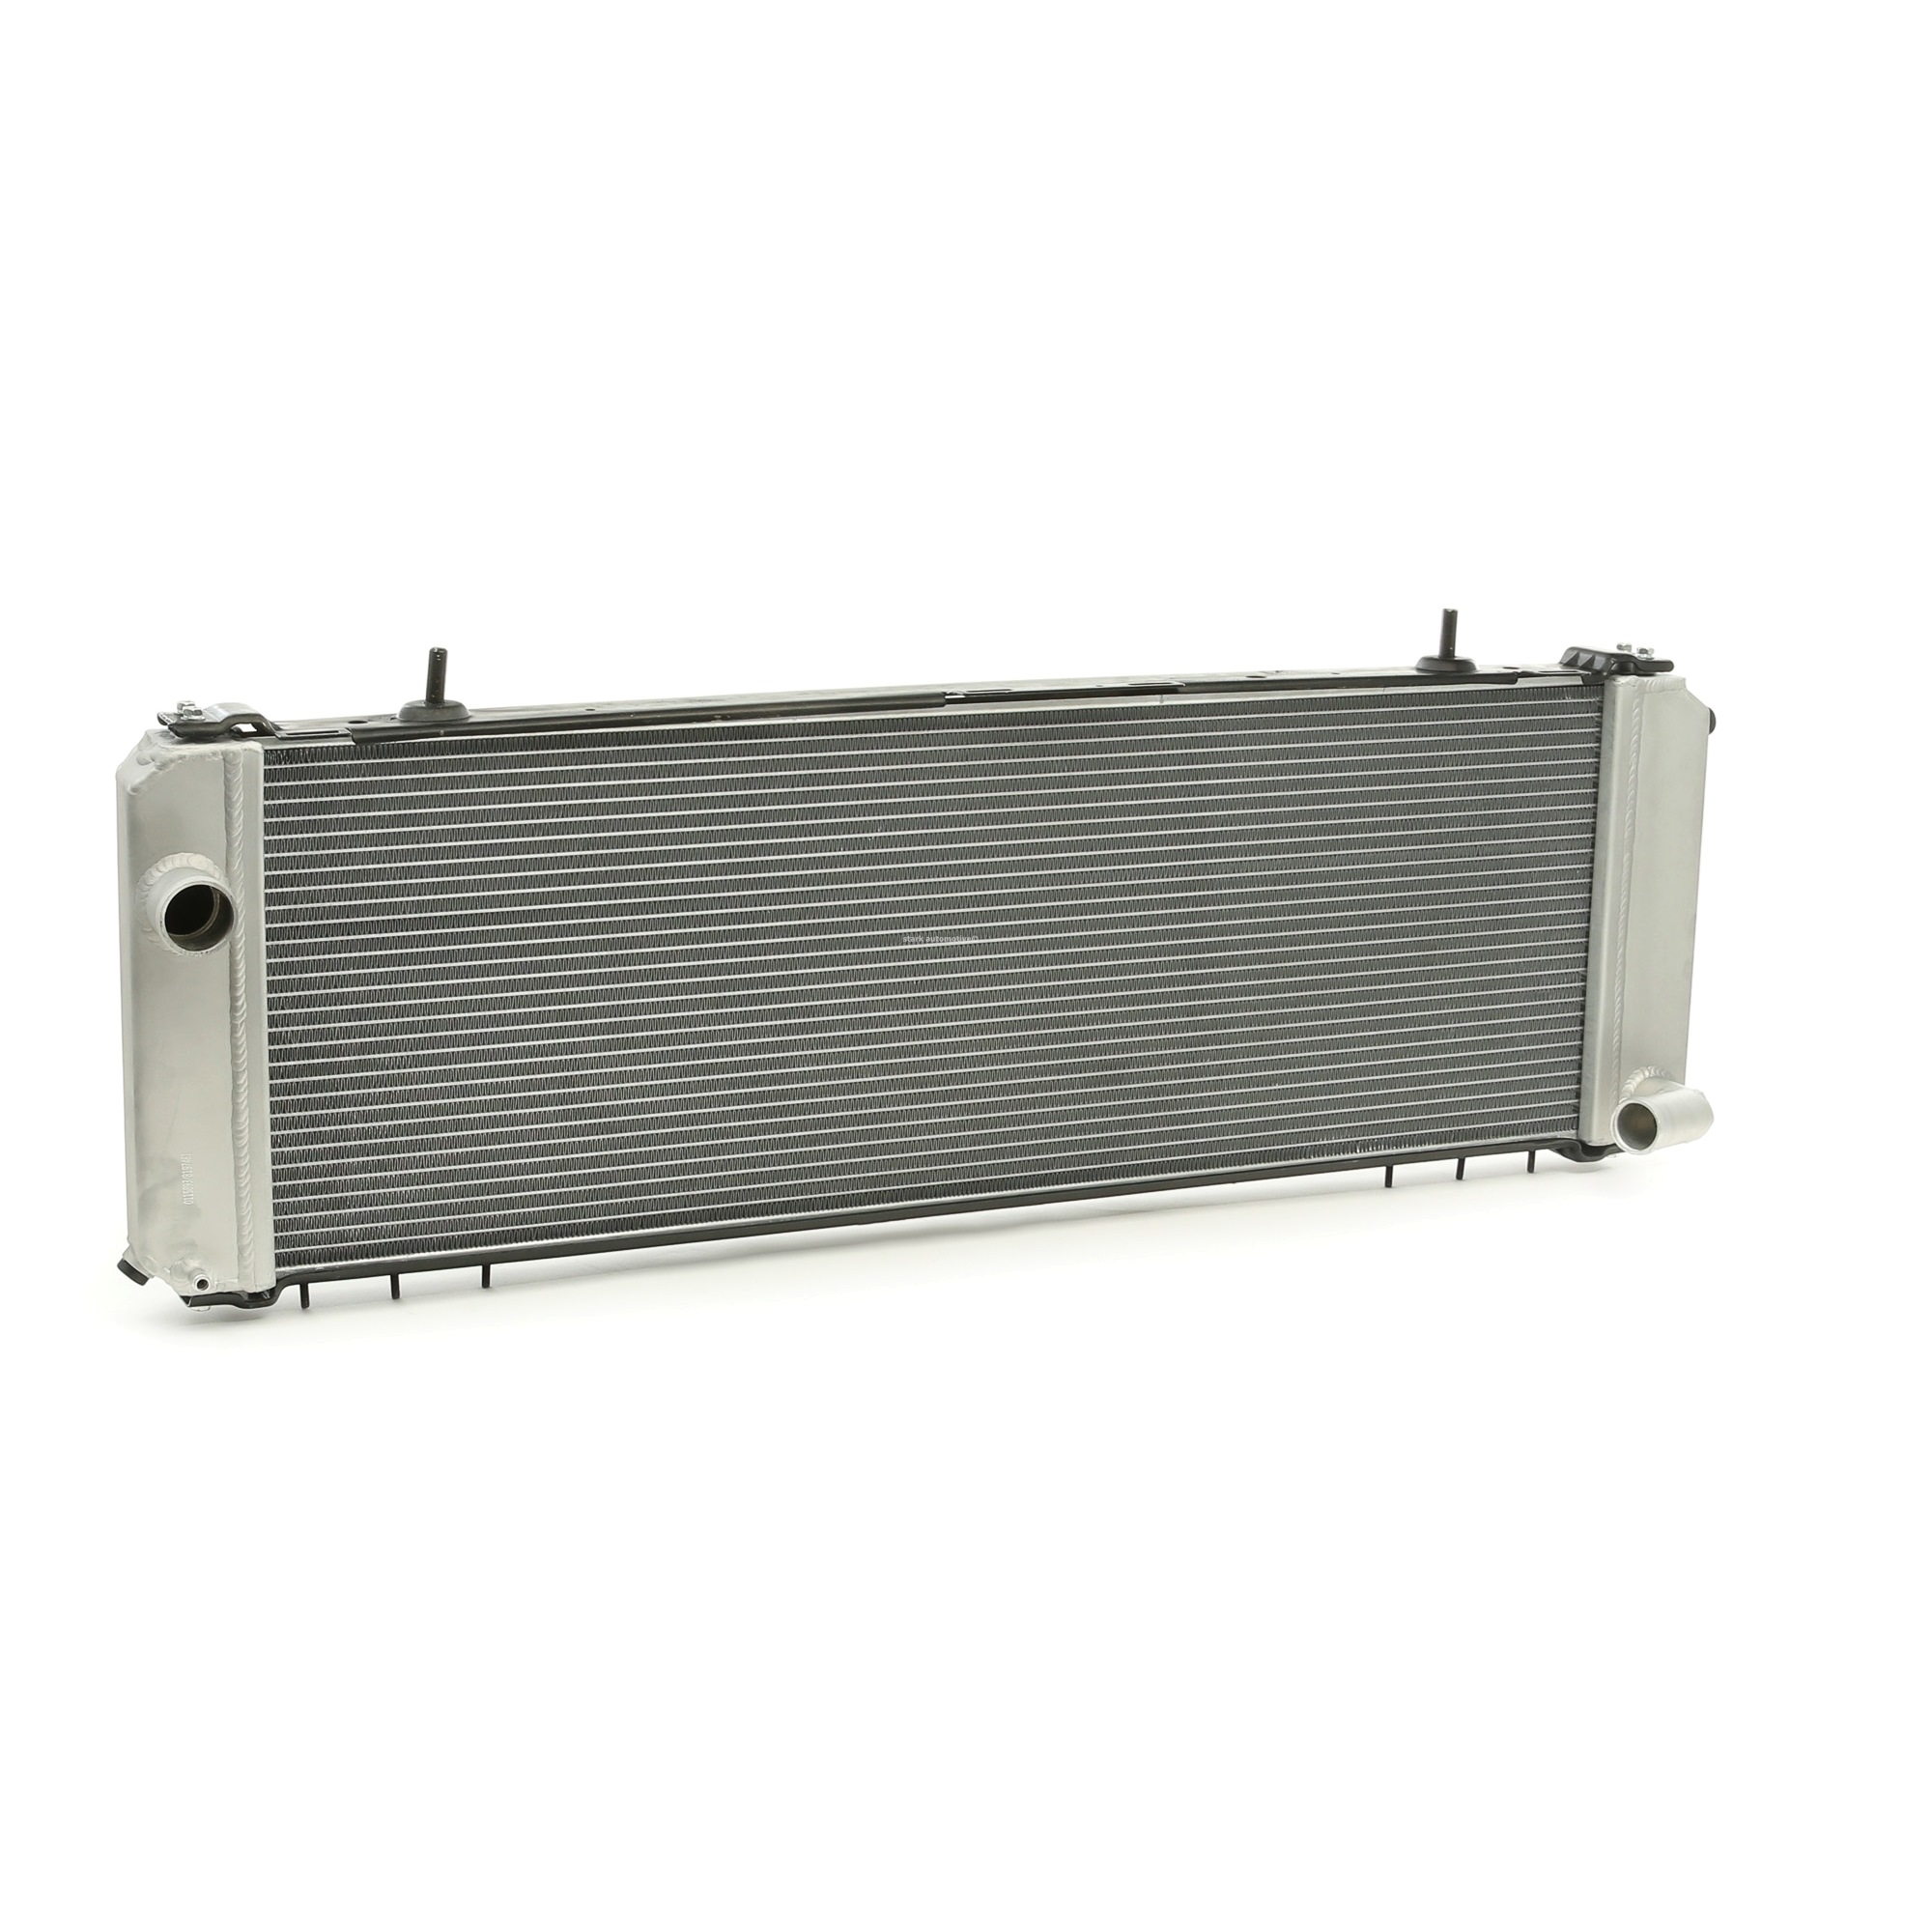 STARK SKRD-0120092 Engine radiator Aluminium, 790 x 268 x 26 mm, Brazed cooling fins